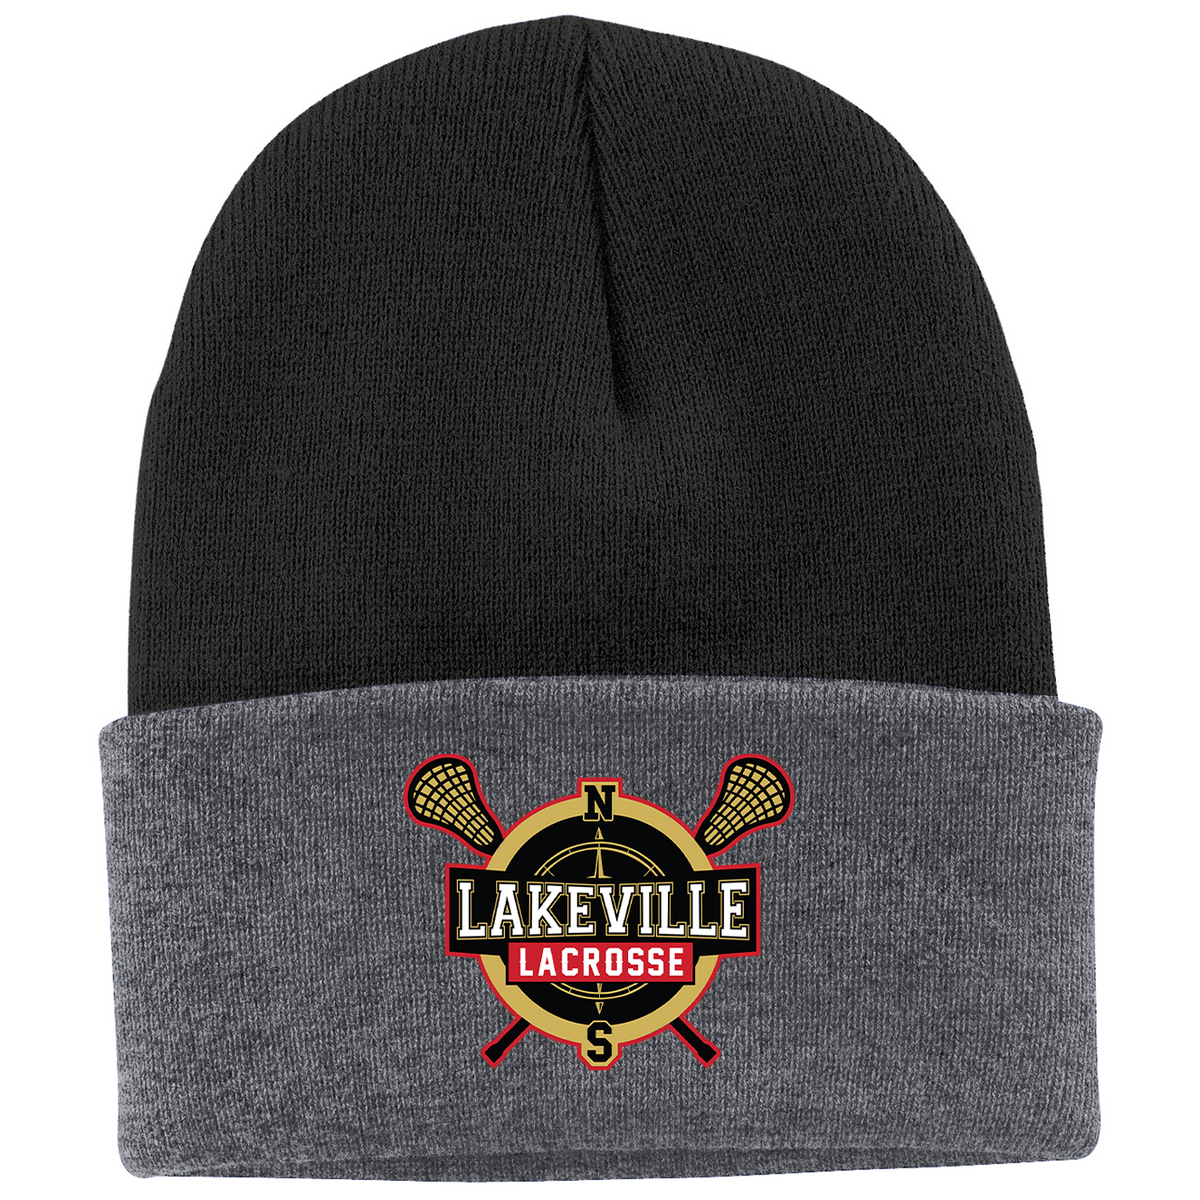 Lakeville Lacrosse Knit Beanie